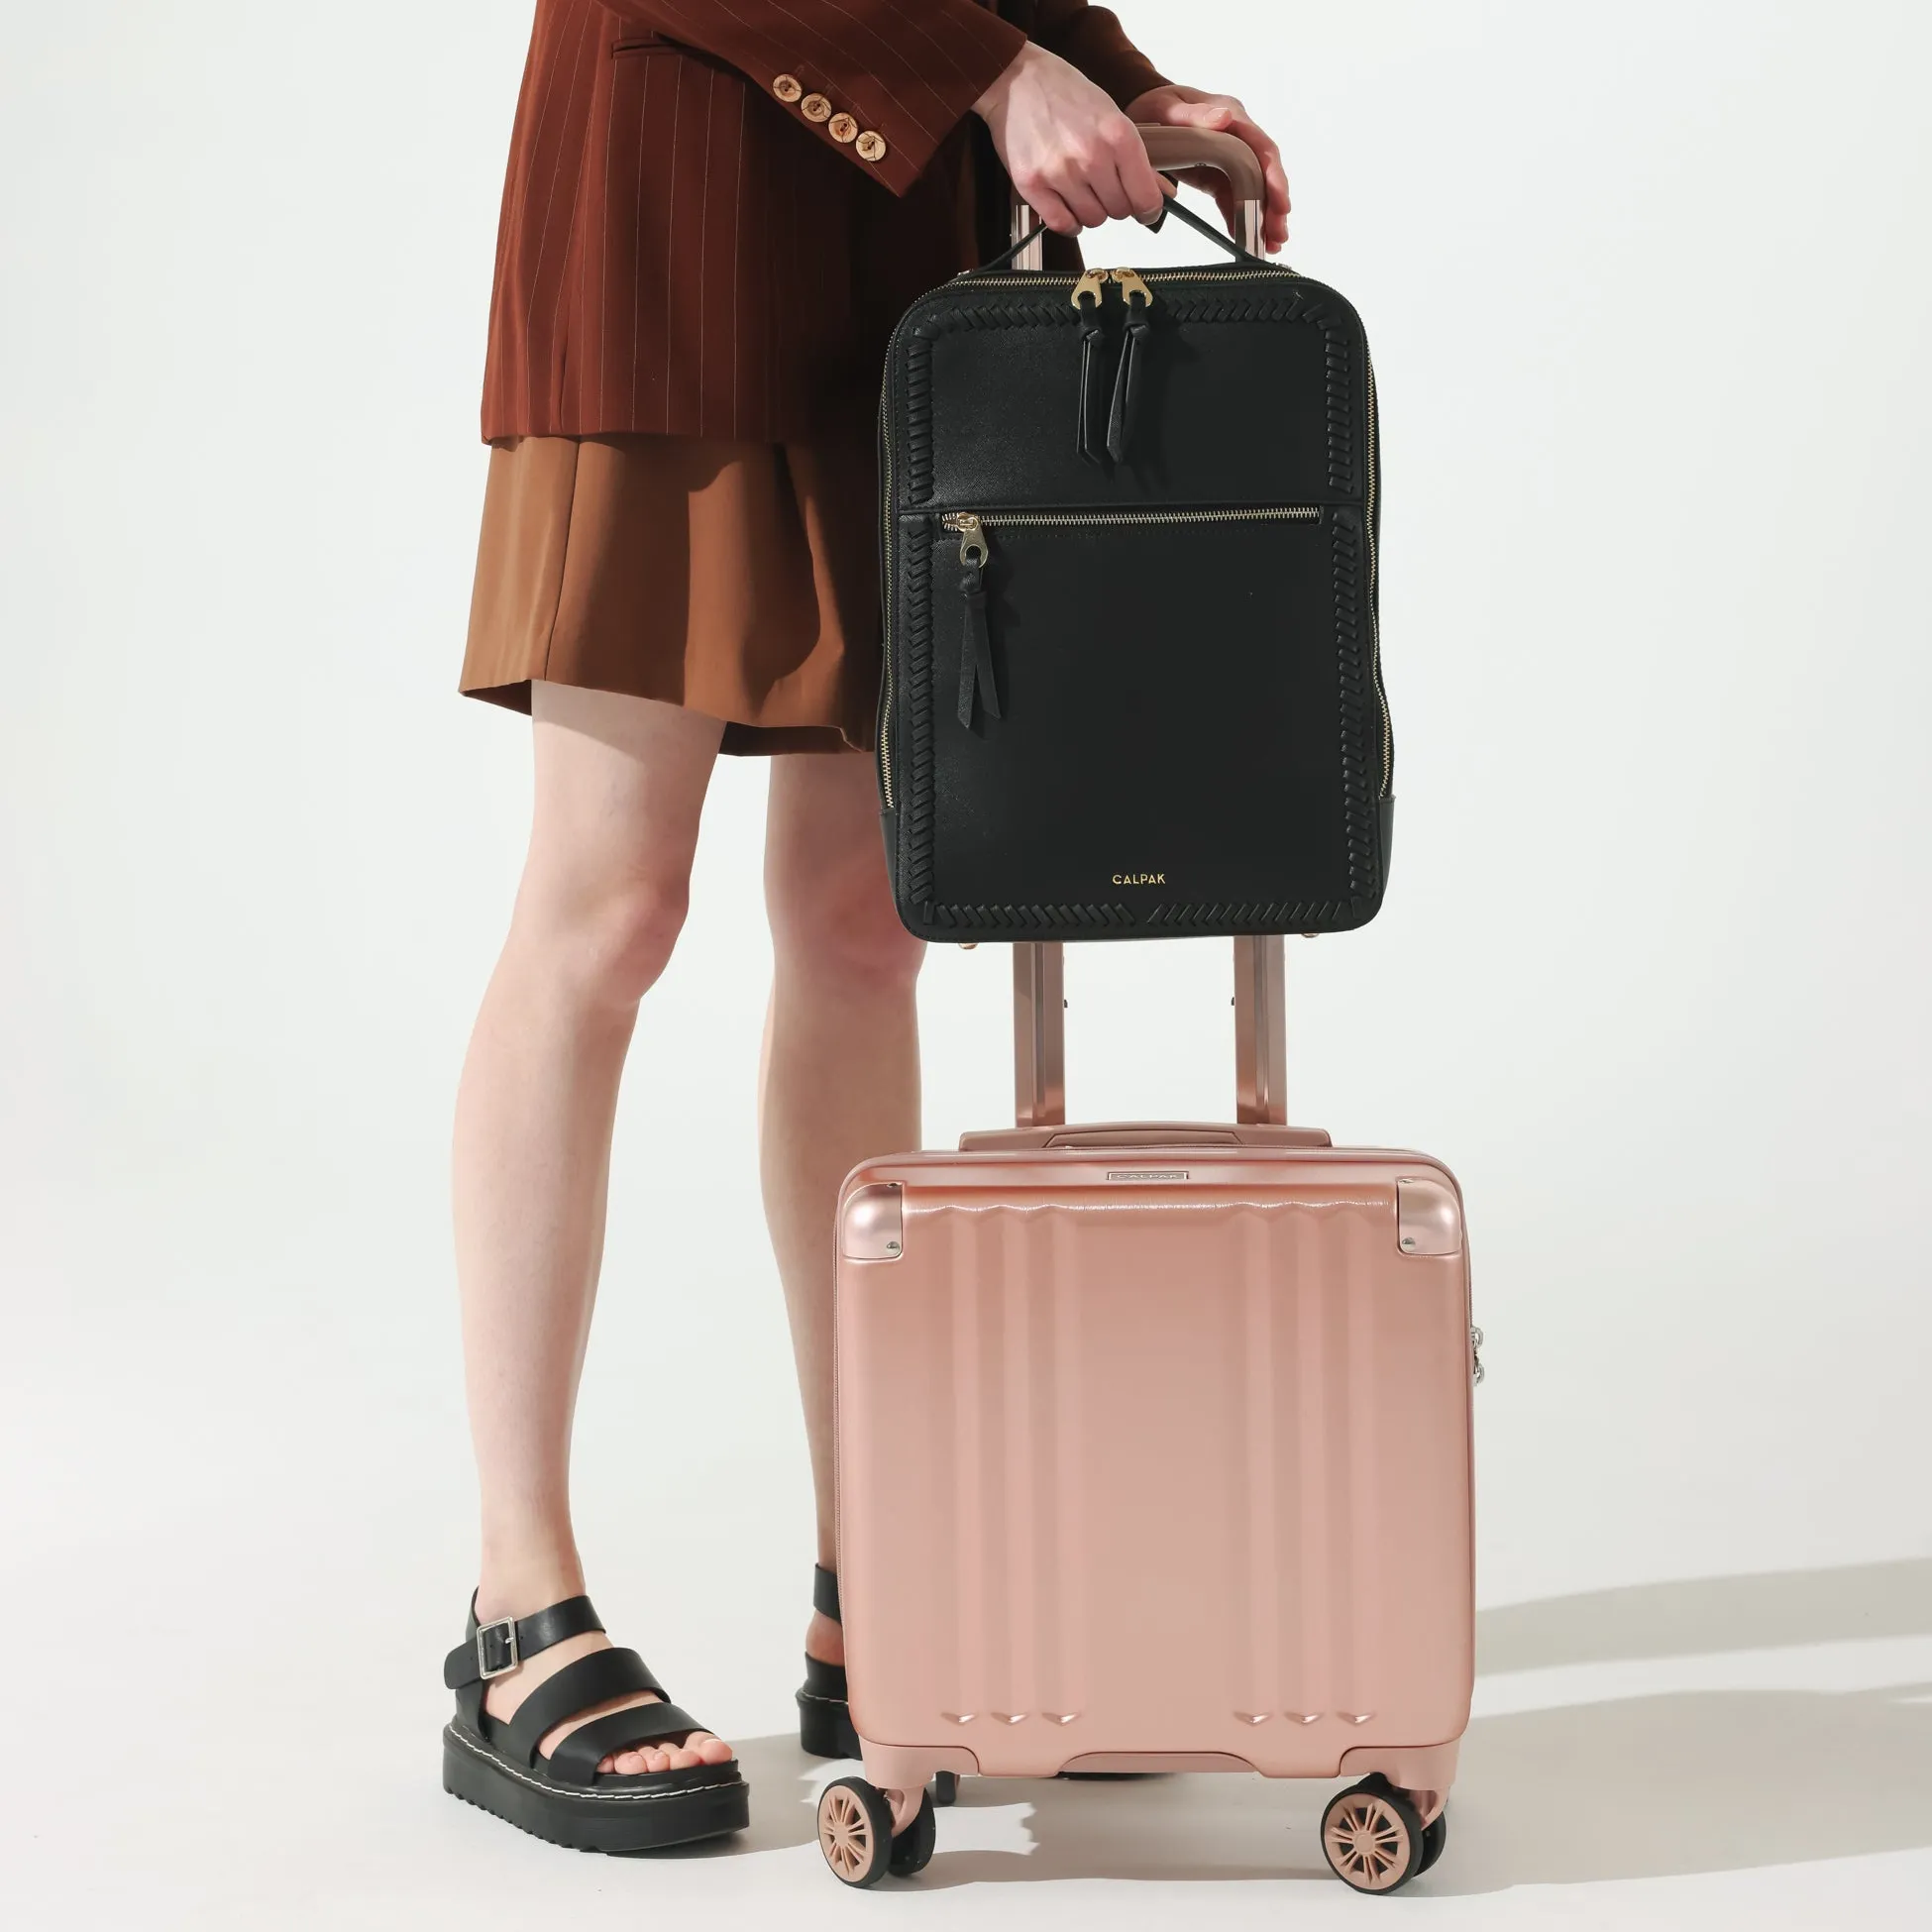 กระเป๋าเดินทางขนาดเล็กคุณภาพสูงสีโรสโกลด์คุณภาพระดับพรีเมียมเกินความคาดหมายกระเป๋าโดยสาร